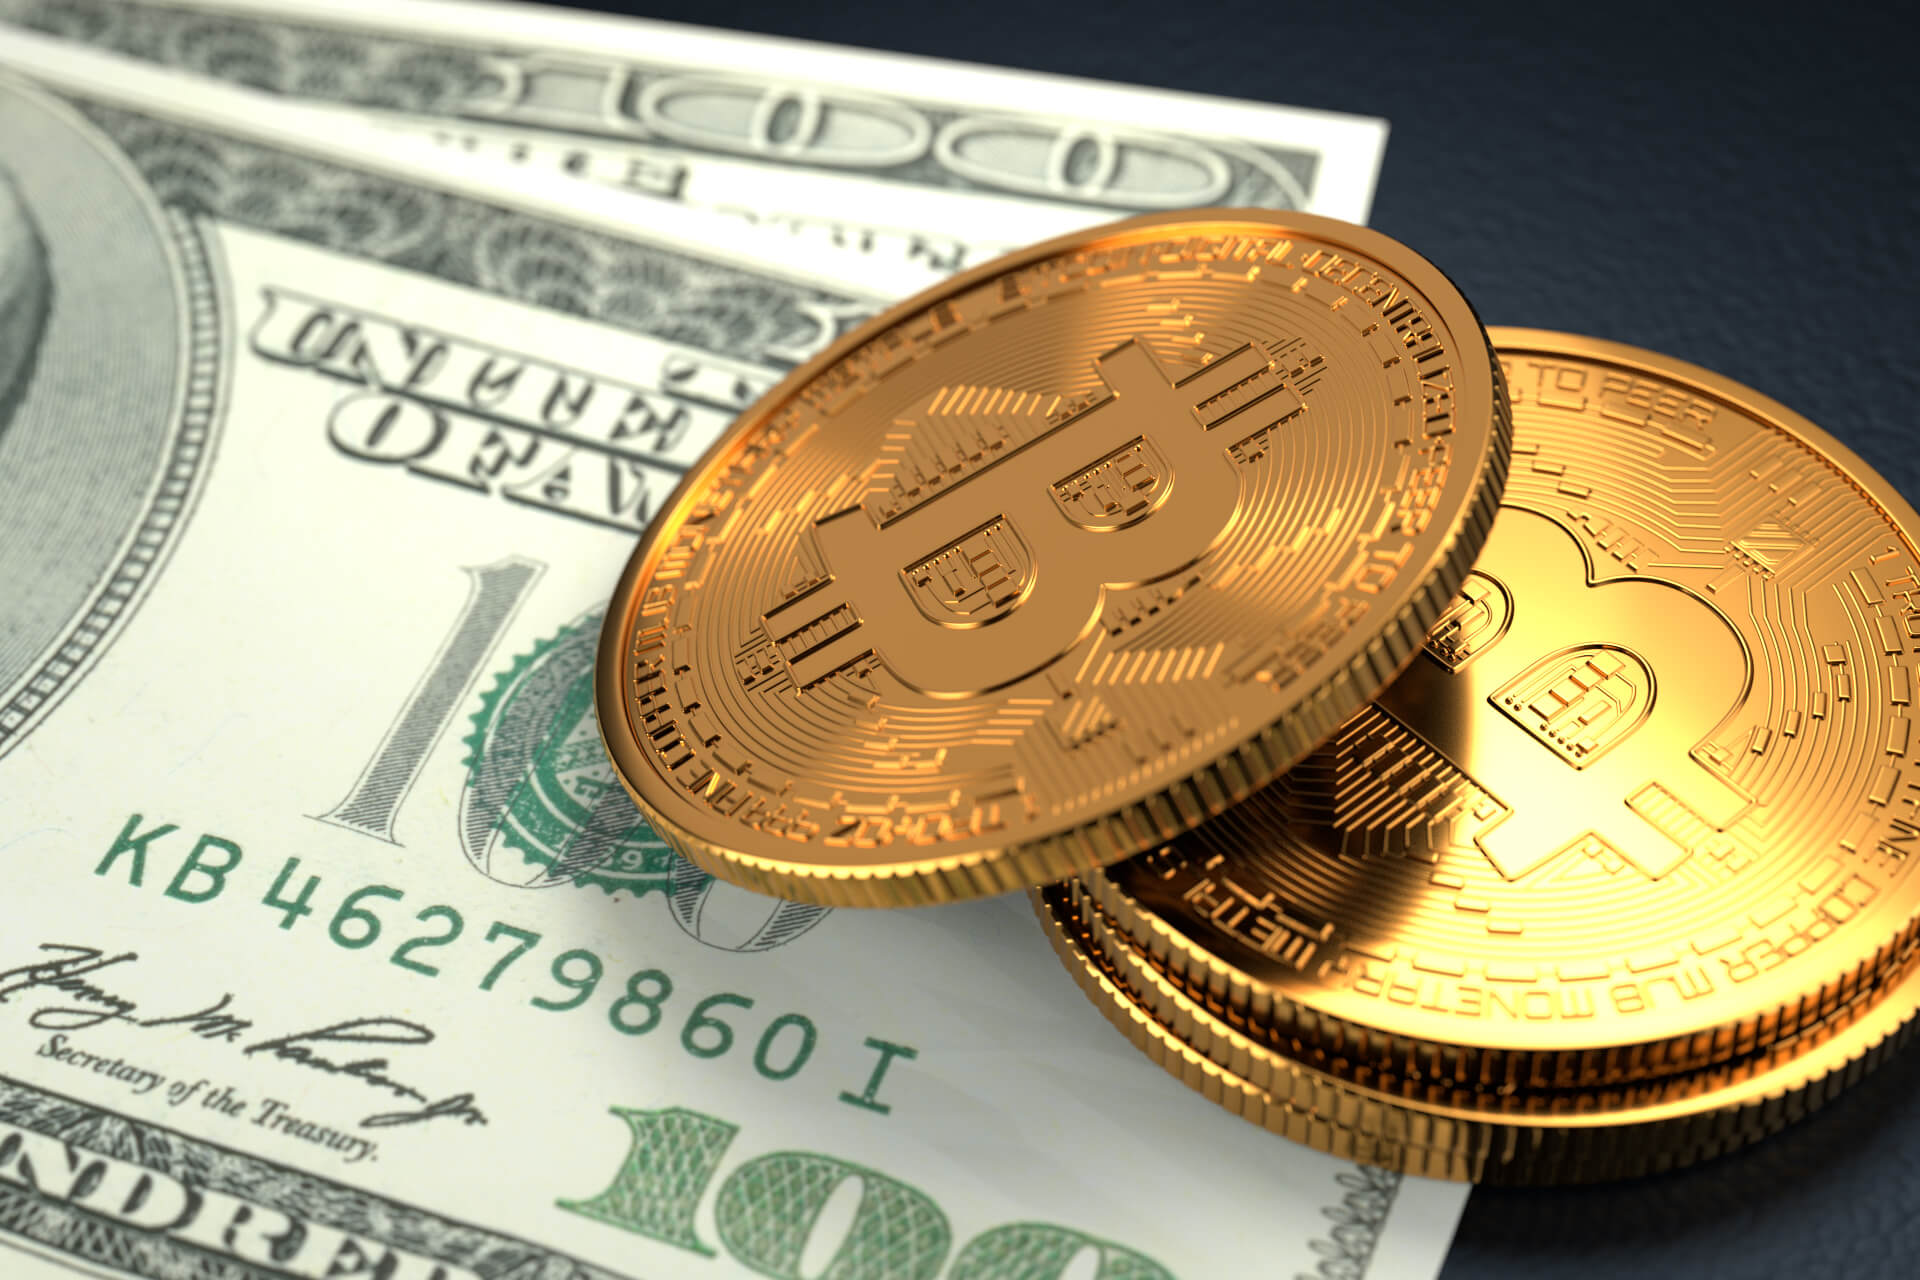 O preço atual do Bitcoin é de US$ 29.111, com um volume de negociação de US$ 14 bilhões